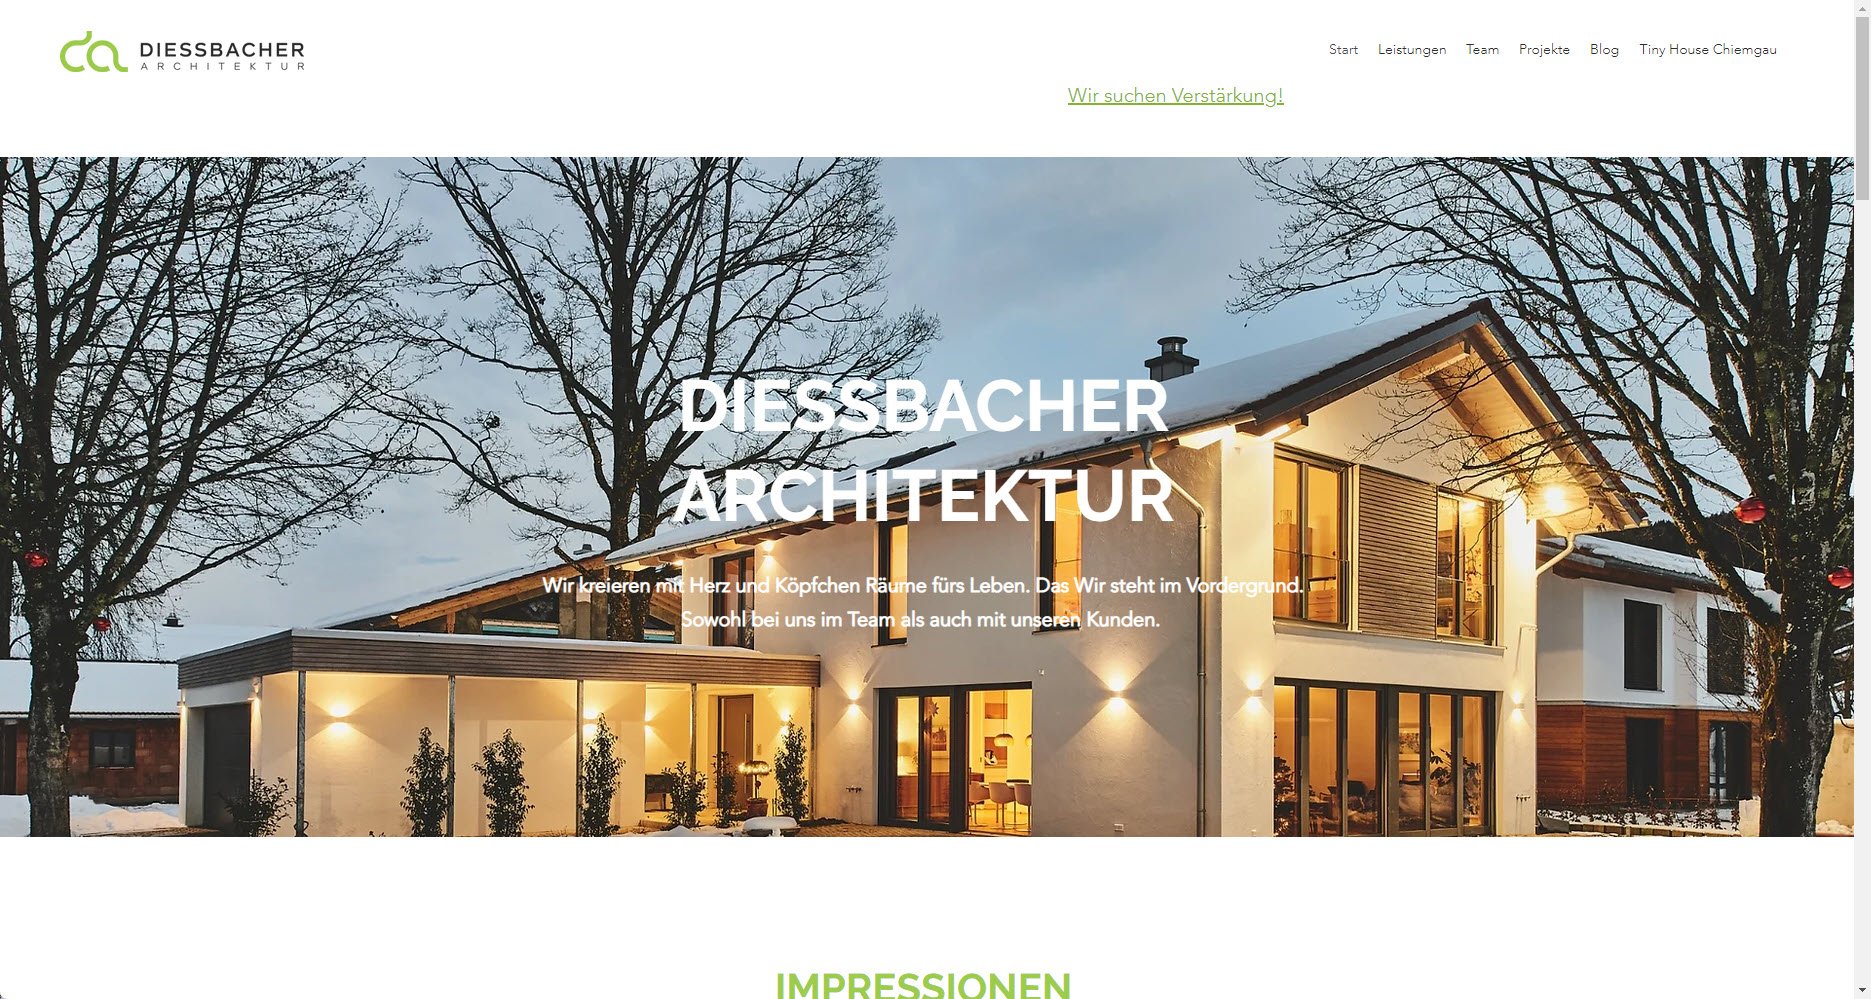 DIESSBACHER ARCHITEKTUR GmbH